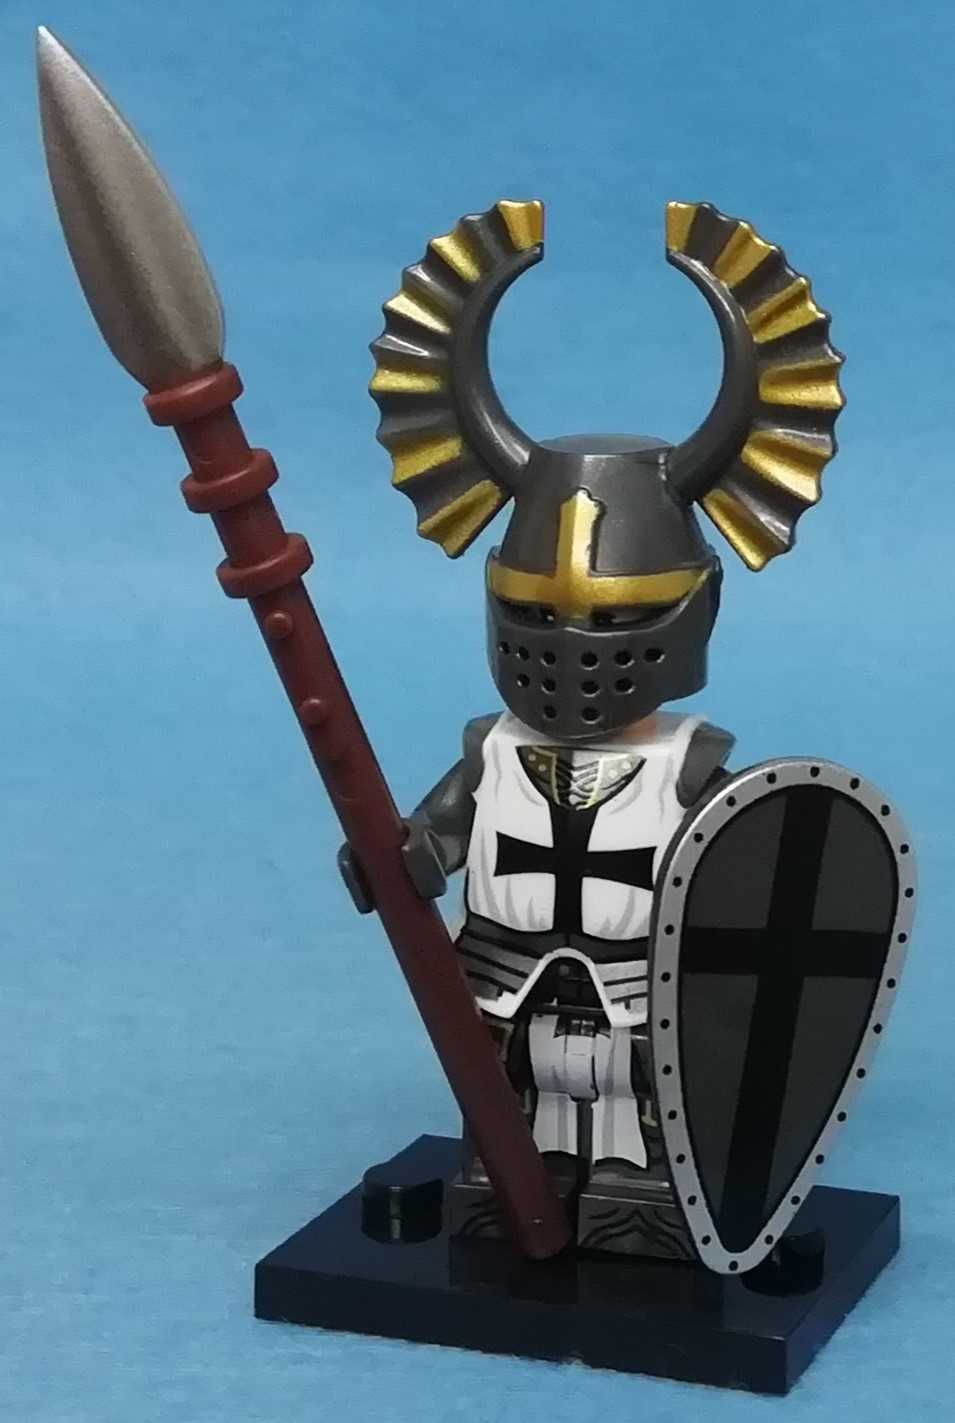 Teutonic Knight v1 (Tempos Antigos)